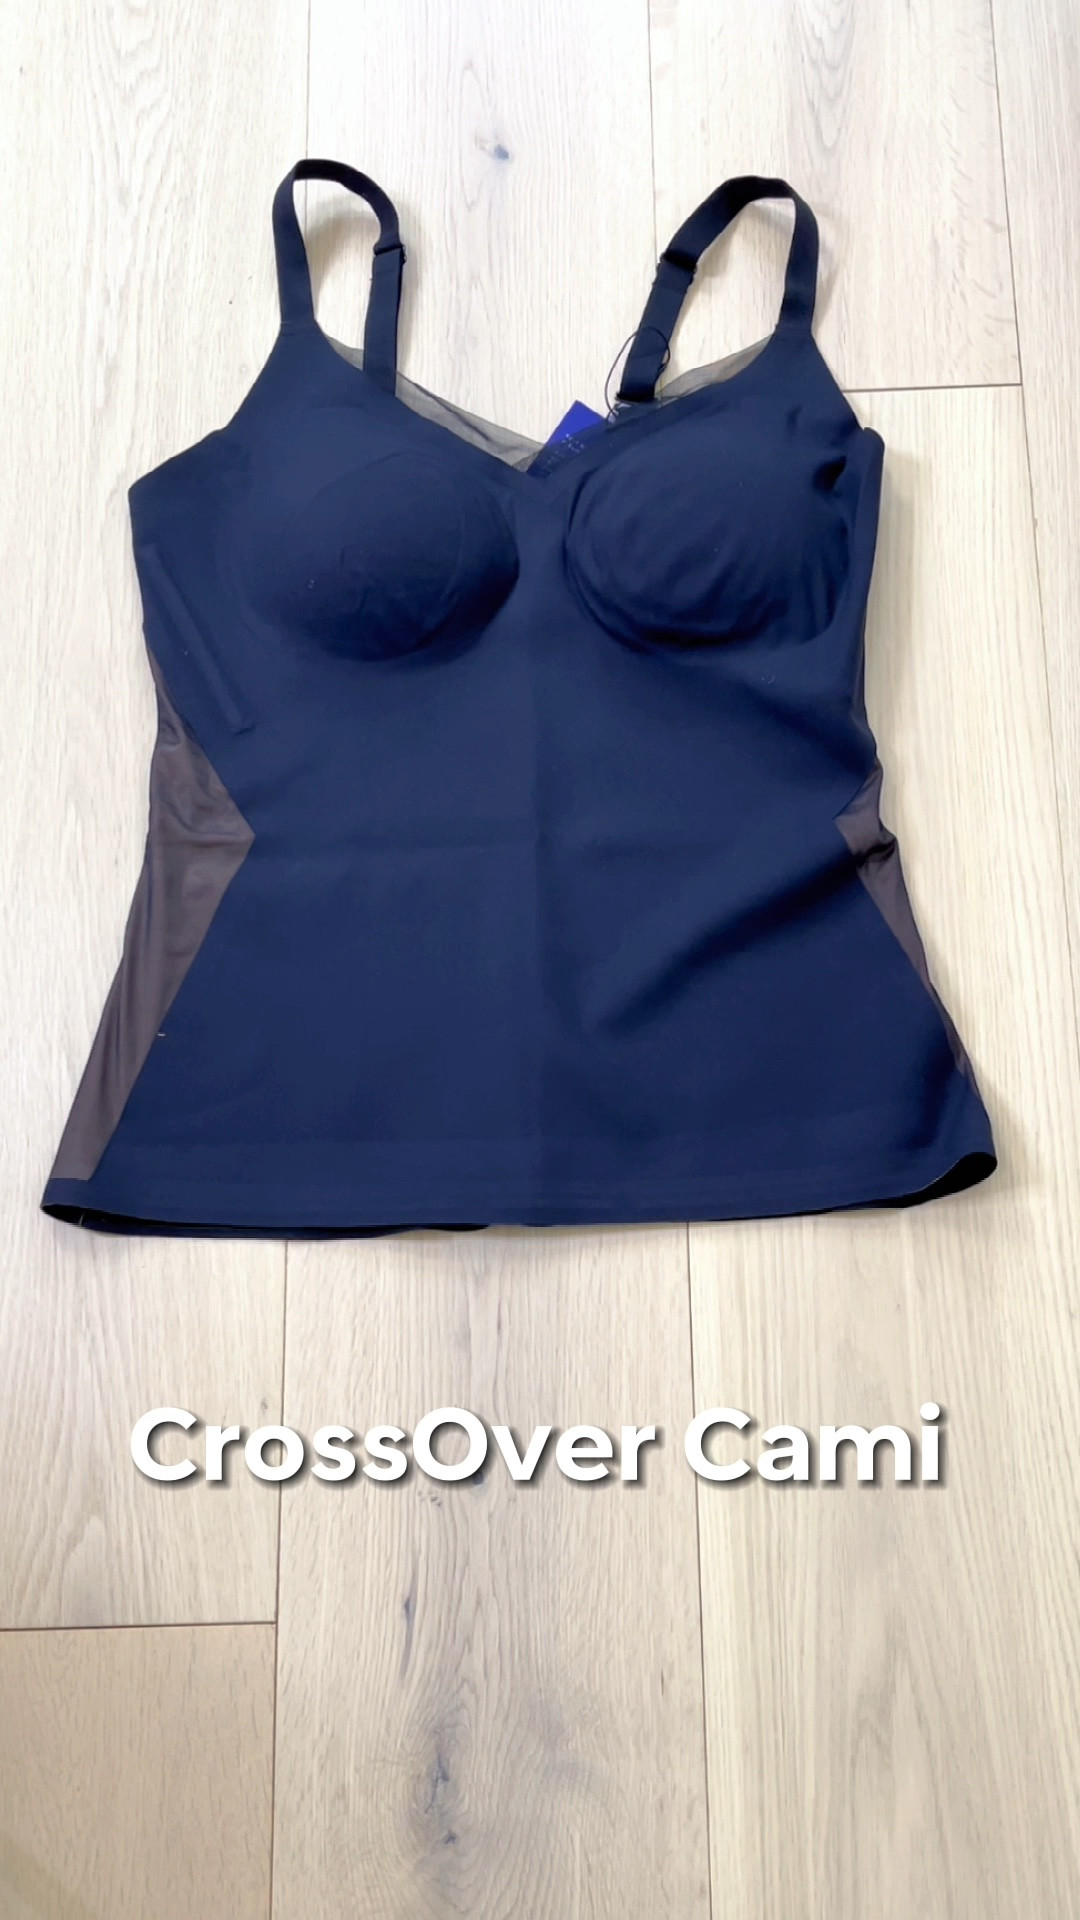 TEASER - Honeylove Shapewear Cami Bodysuit - Runway + DISCOUNT ! 